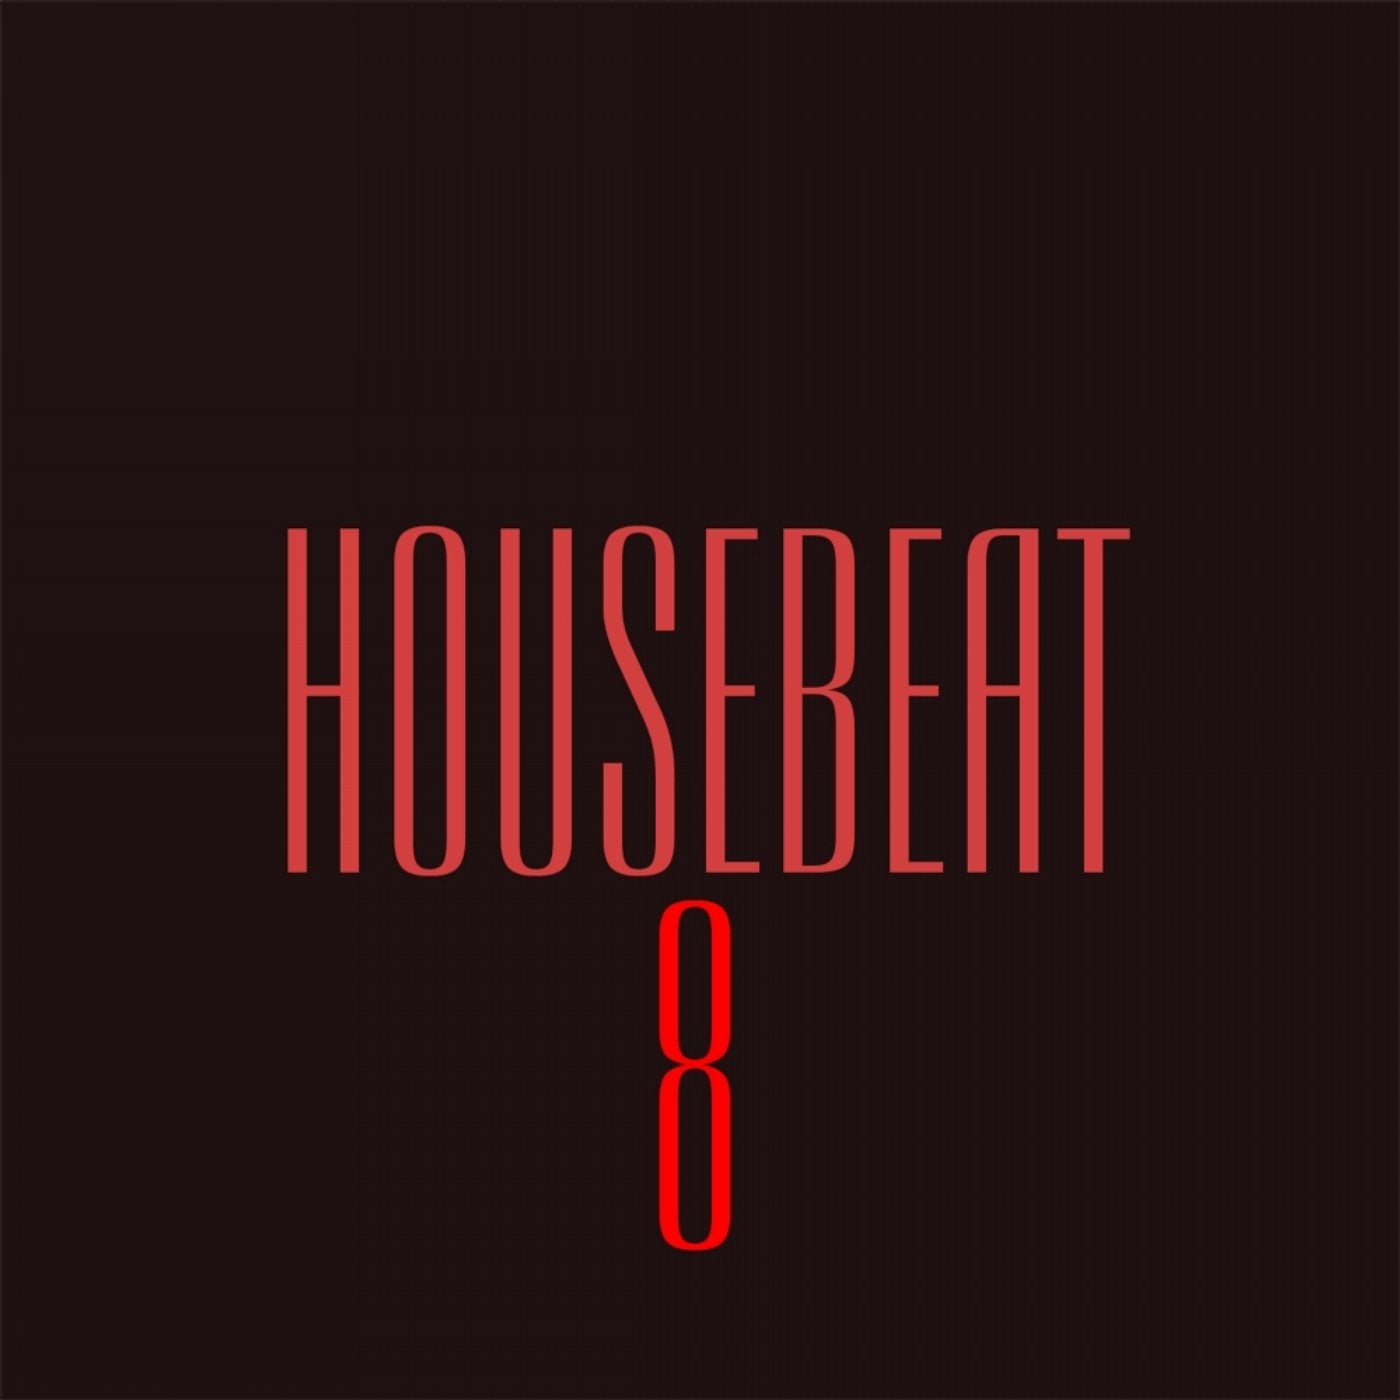 HouseBeat 8